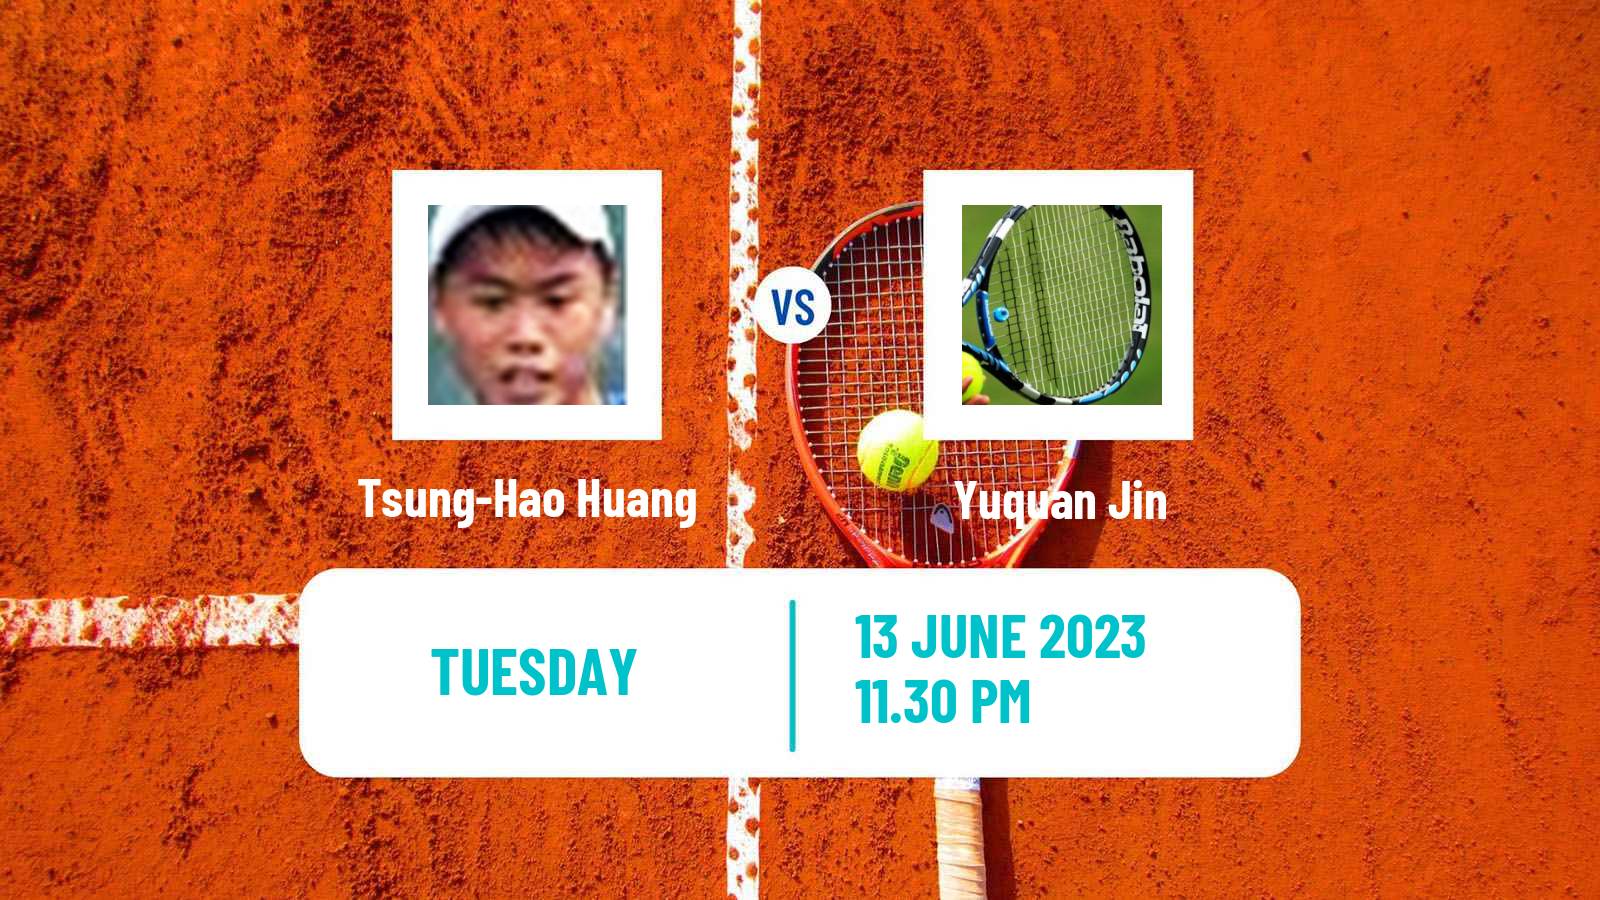 Tennis ITF M15 Tianjin Men Tsung-Hao Huang - Yuquan Jin